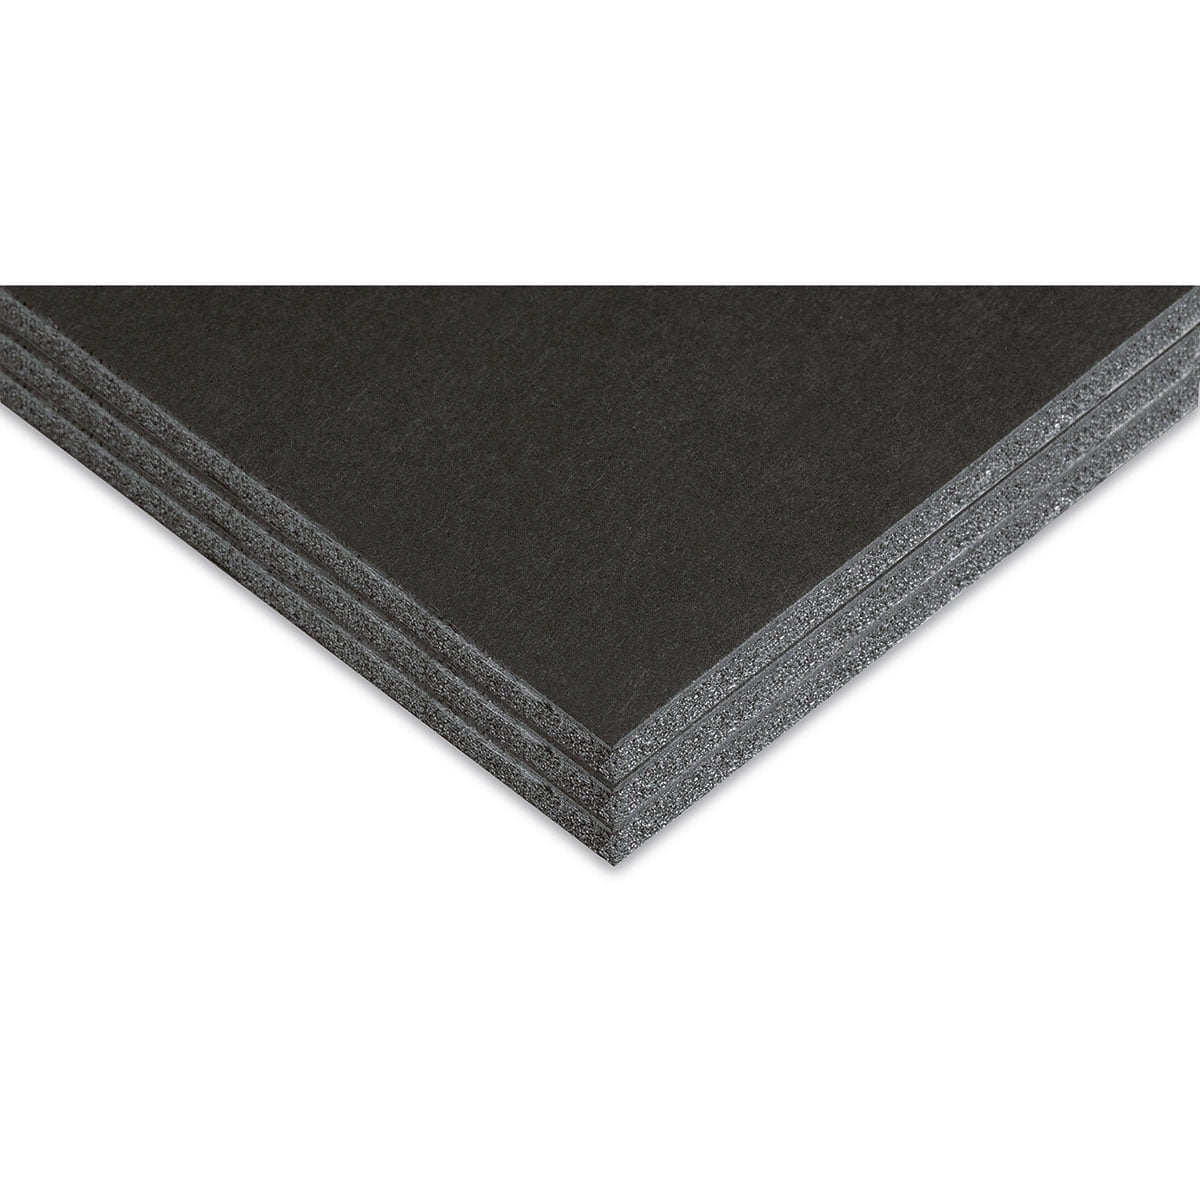 Blackcore Foam Board Pack - 16 x 20 x 3/16, Black, Pkg of 3